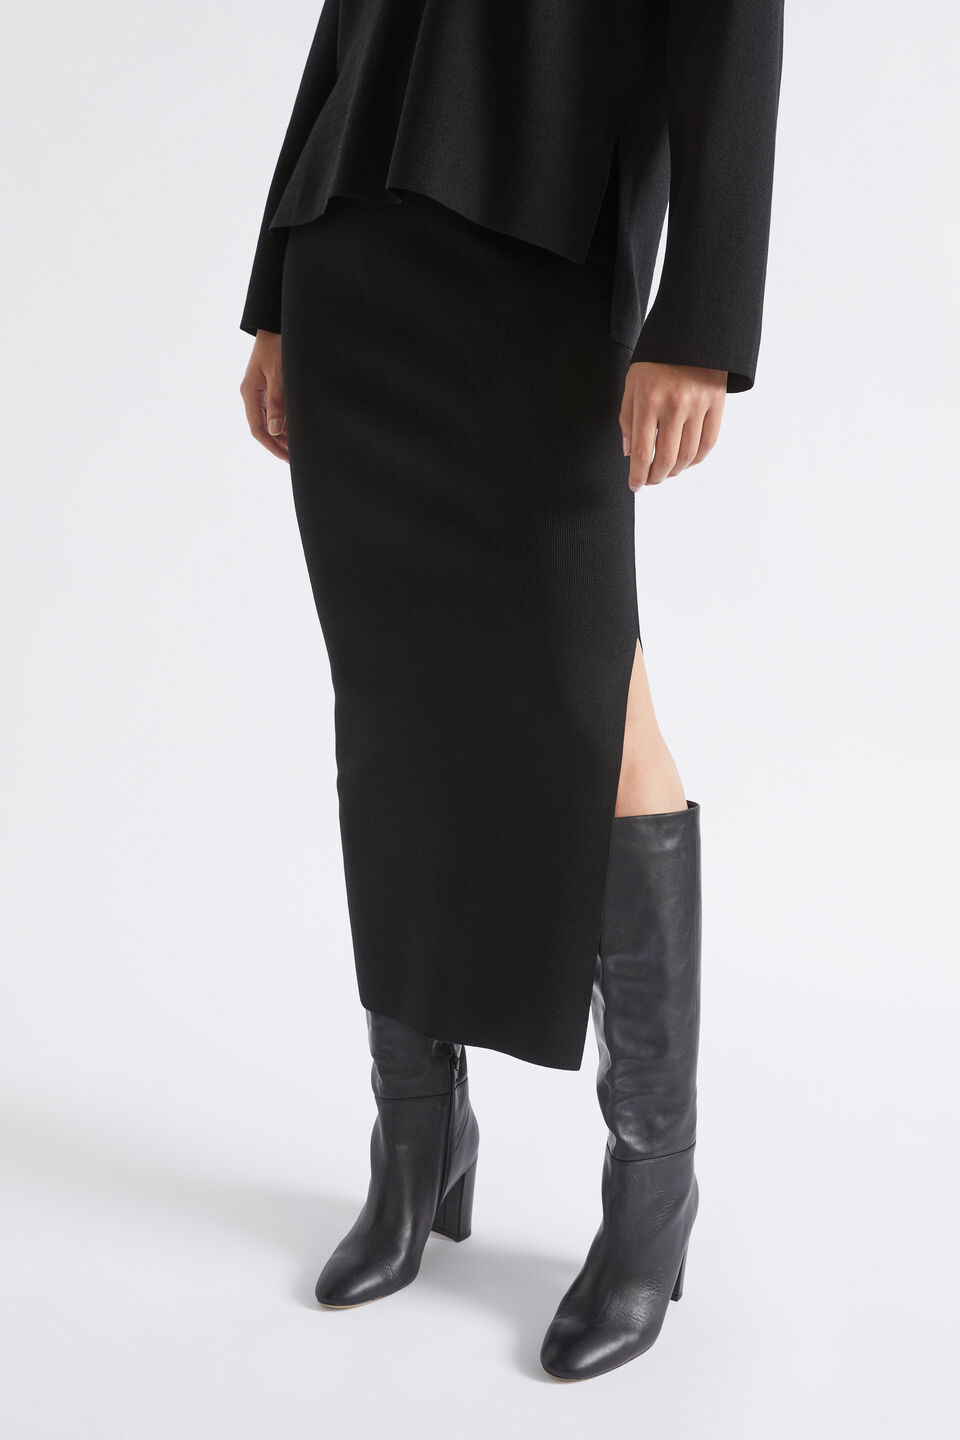 Crepe Knit Split Skirt  Black